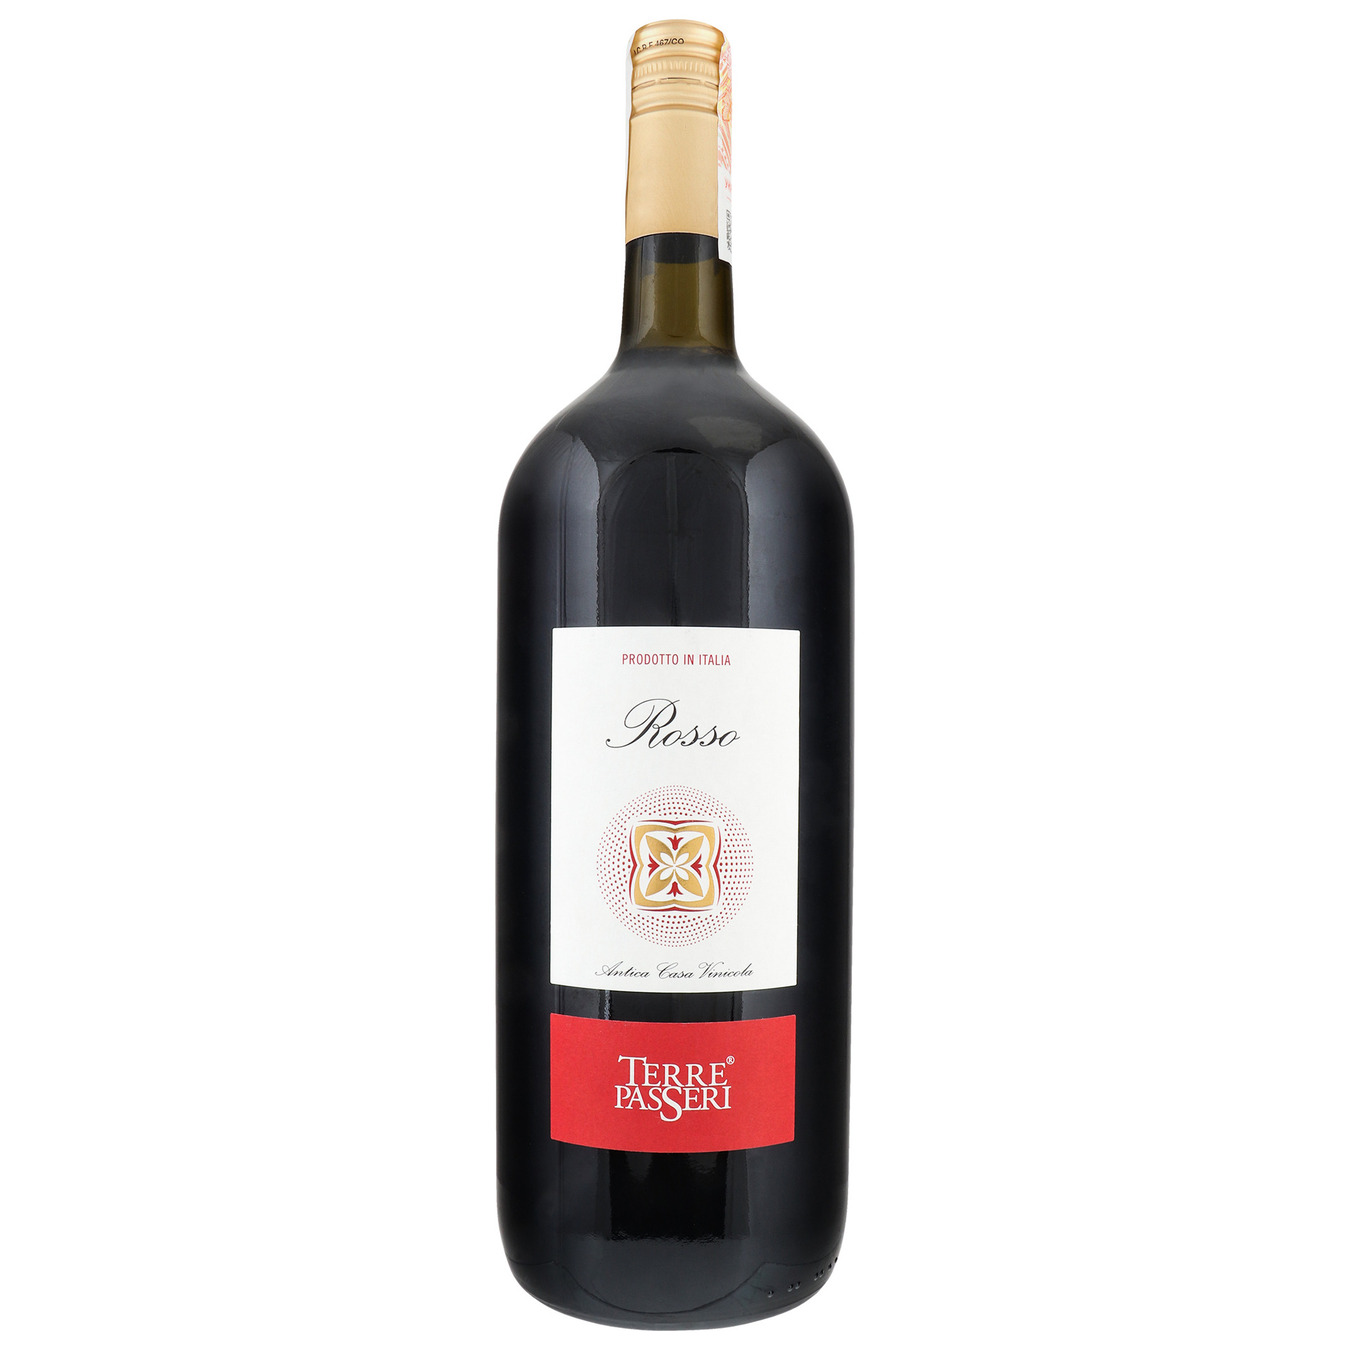 Вино Terre Passeri Terre Rossa красное сухое 10,5% 1,5л